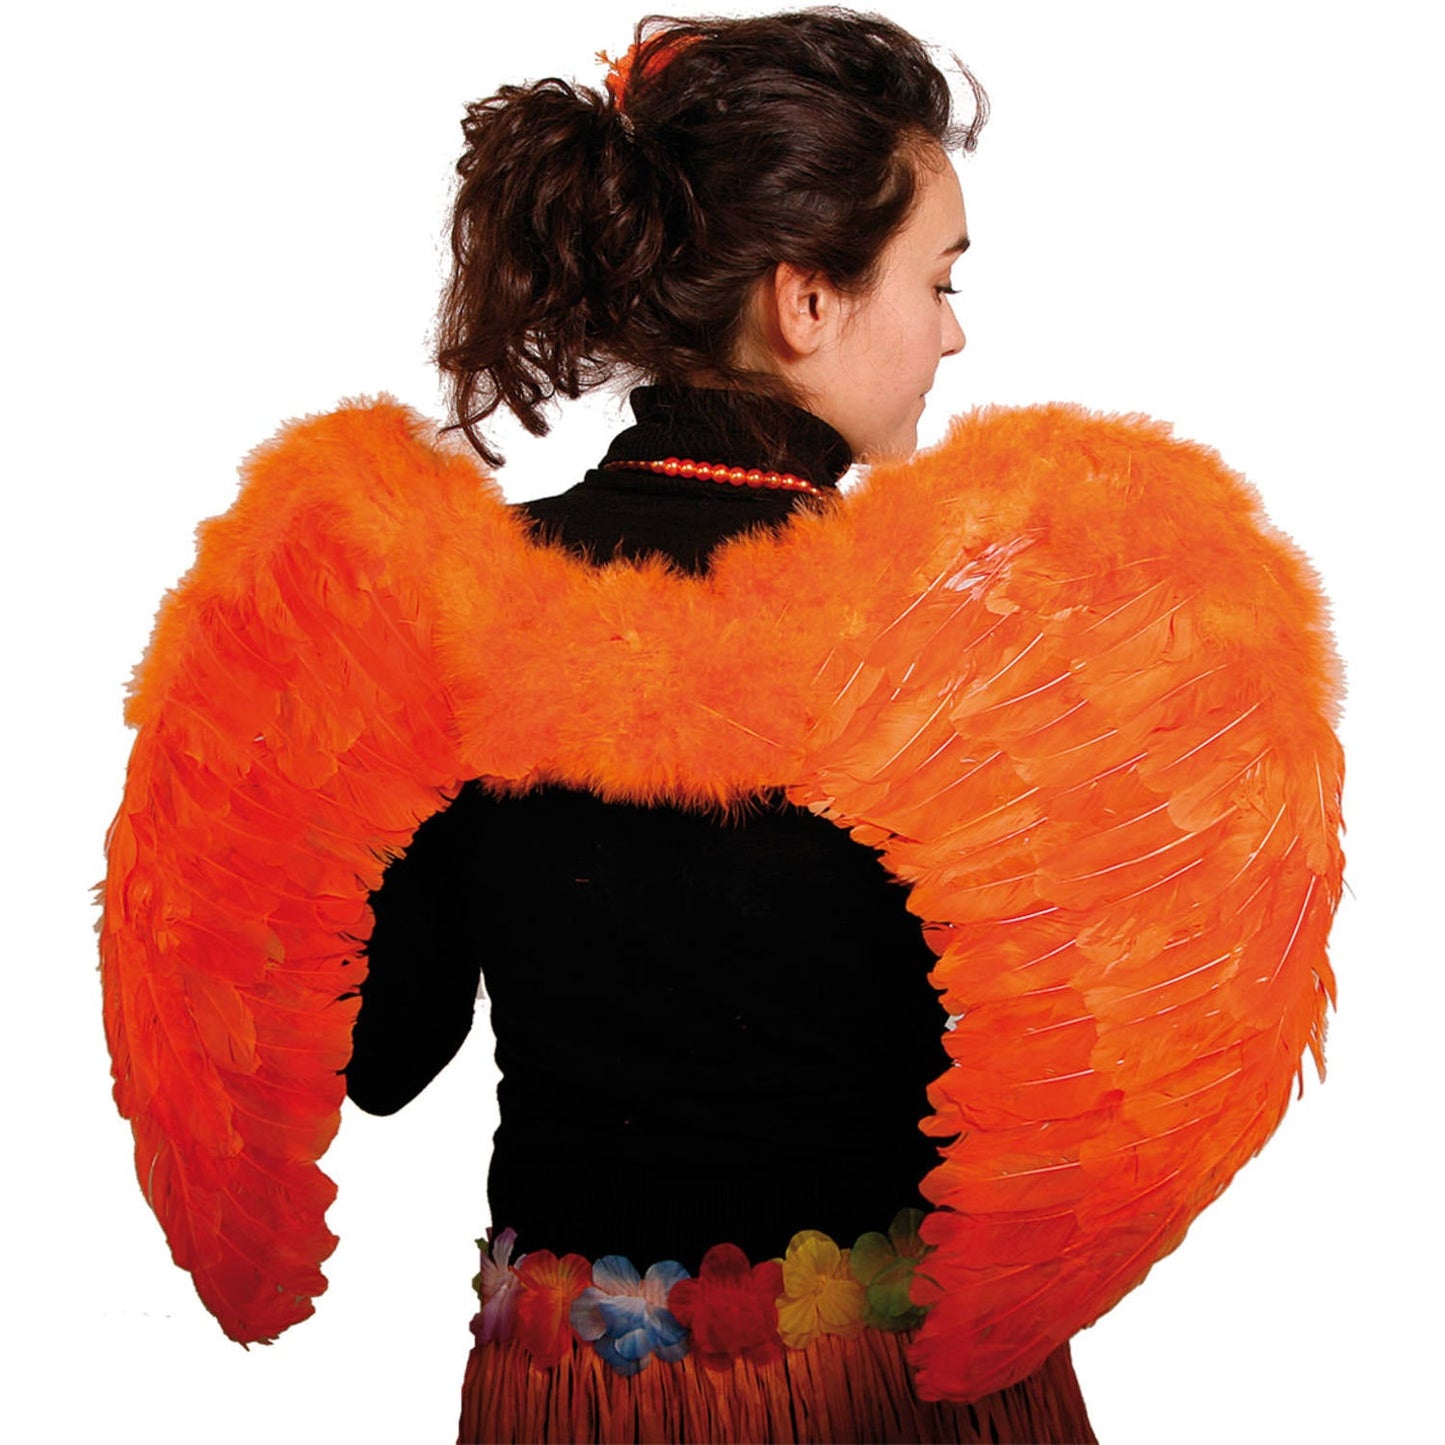 Koningsdag Engelen Vleugels Oranje - 80cm Feestelijke Accessoire voor Koningsdagvieringen en Festivals